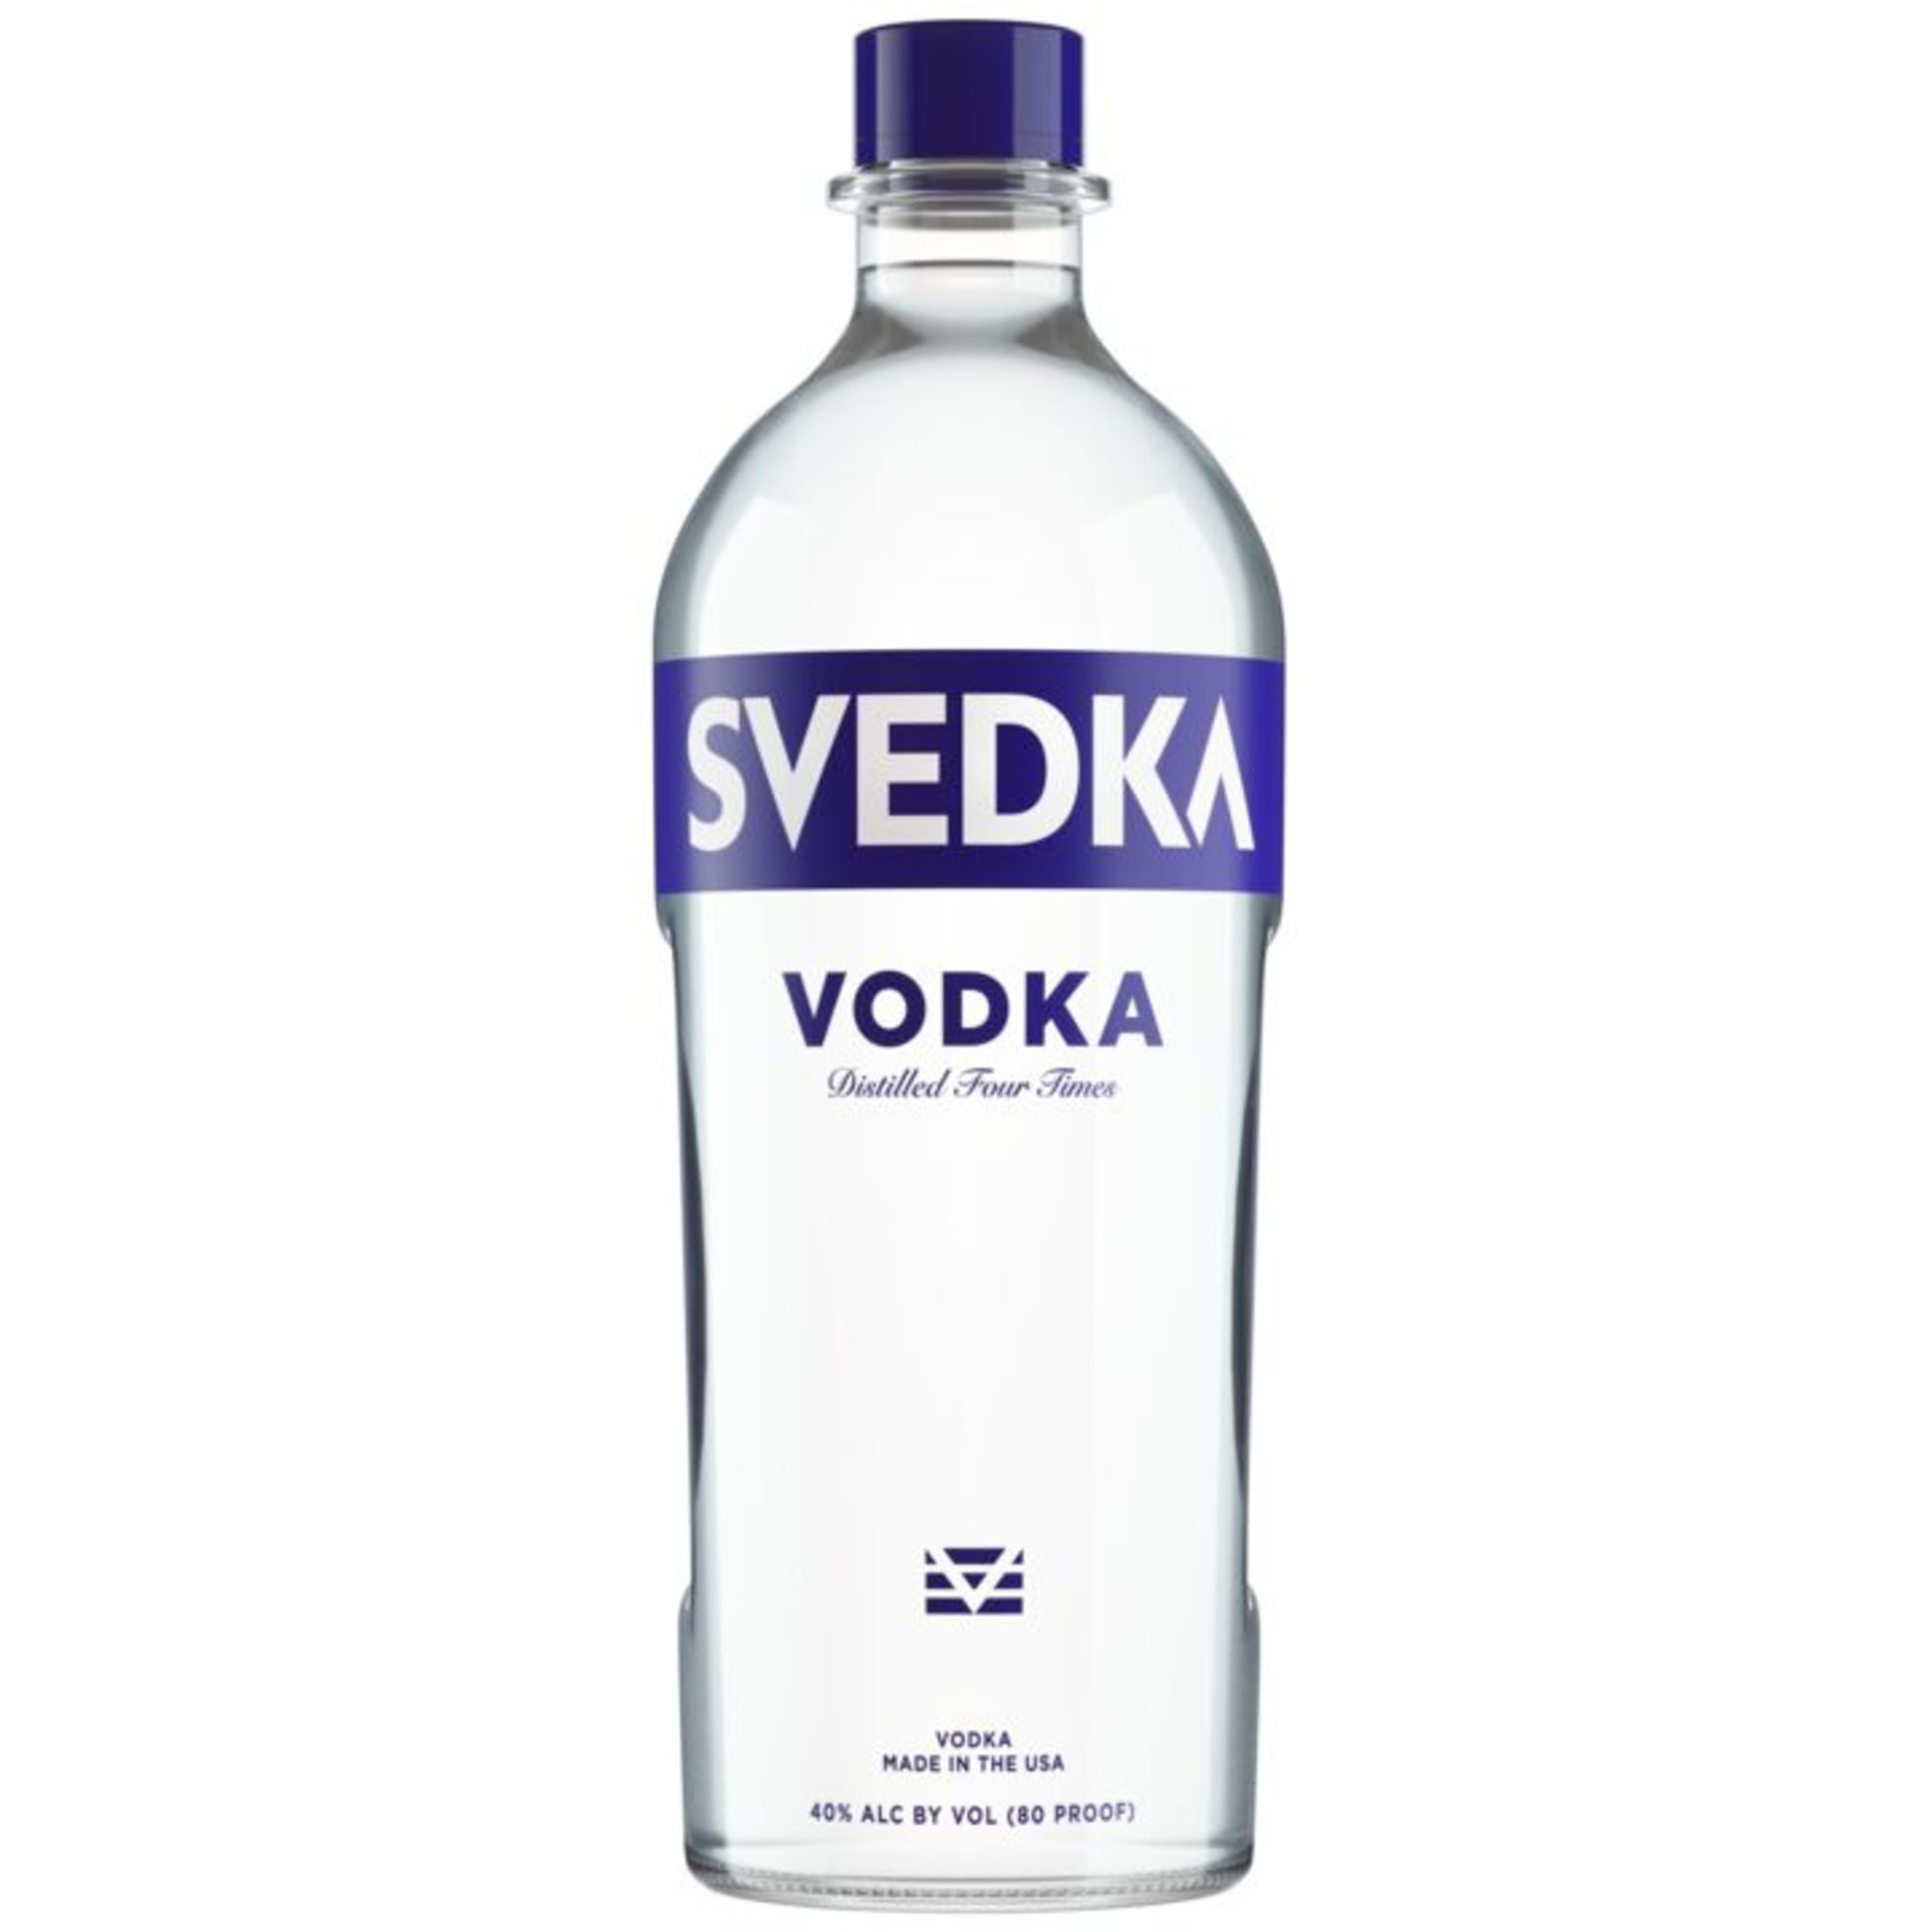 Grey Goose Vodka 40% Vol. 4,5l